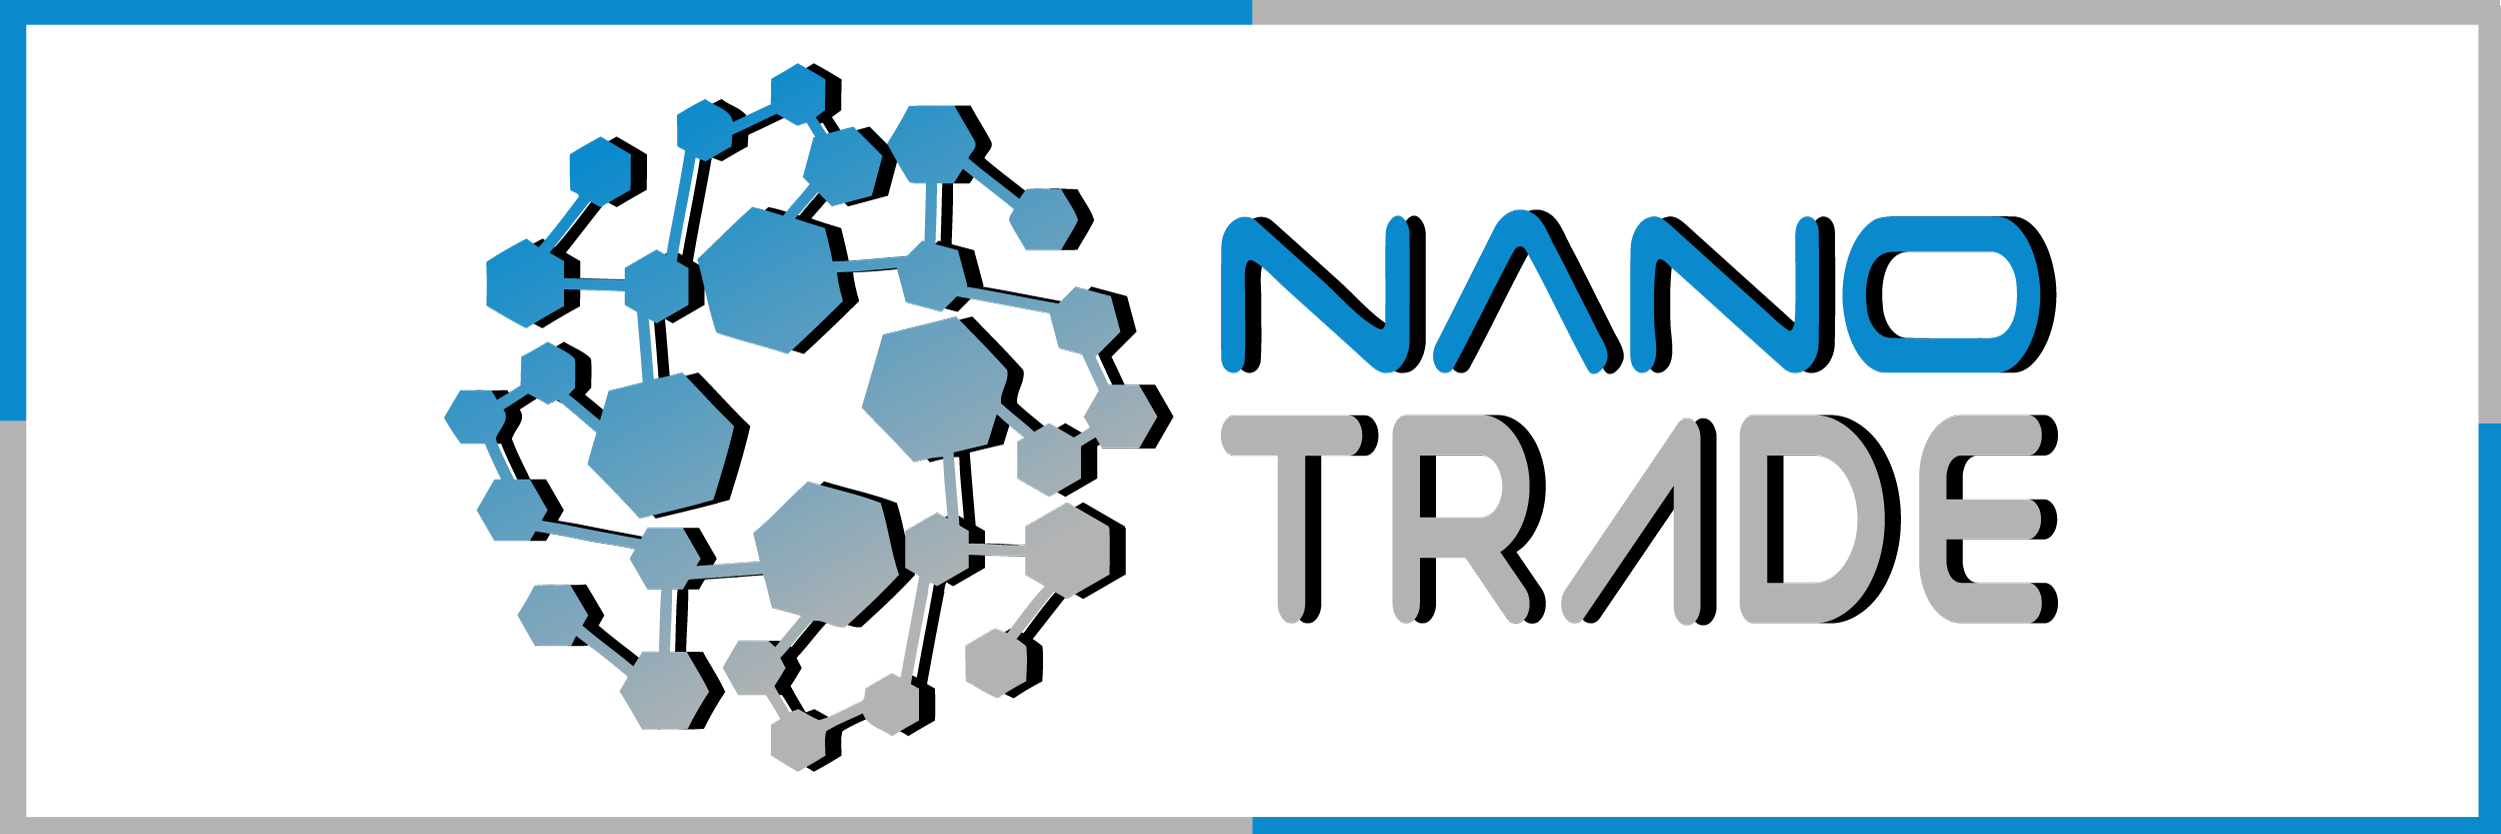 NanoTRADE | Trading company